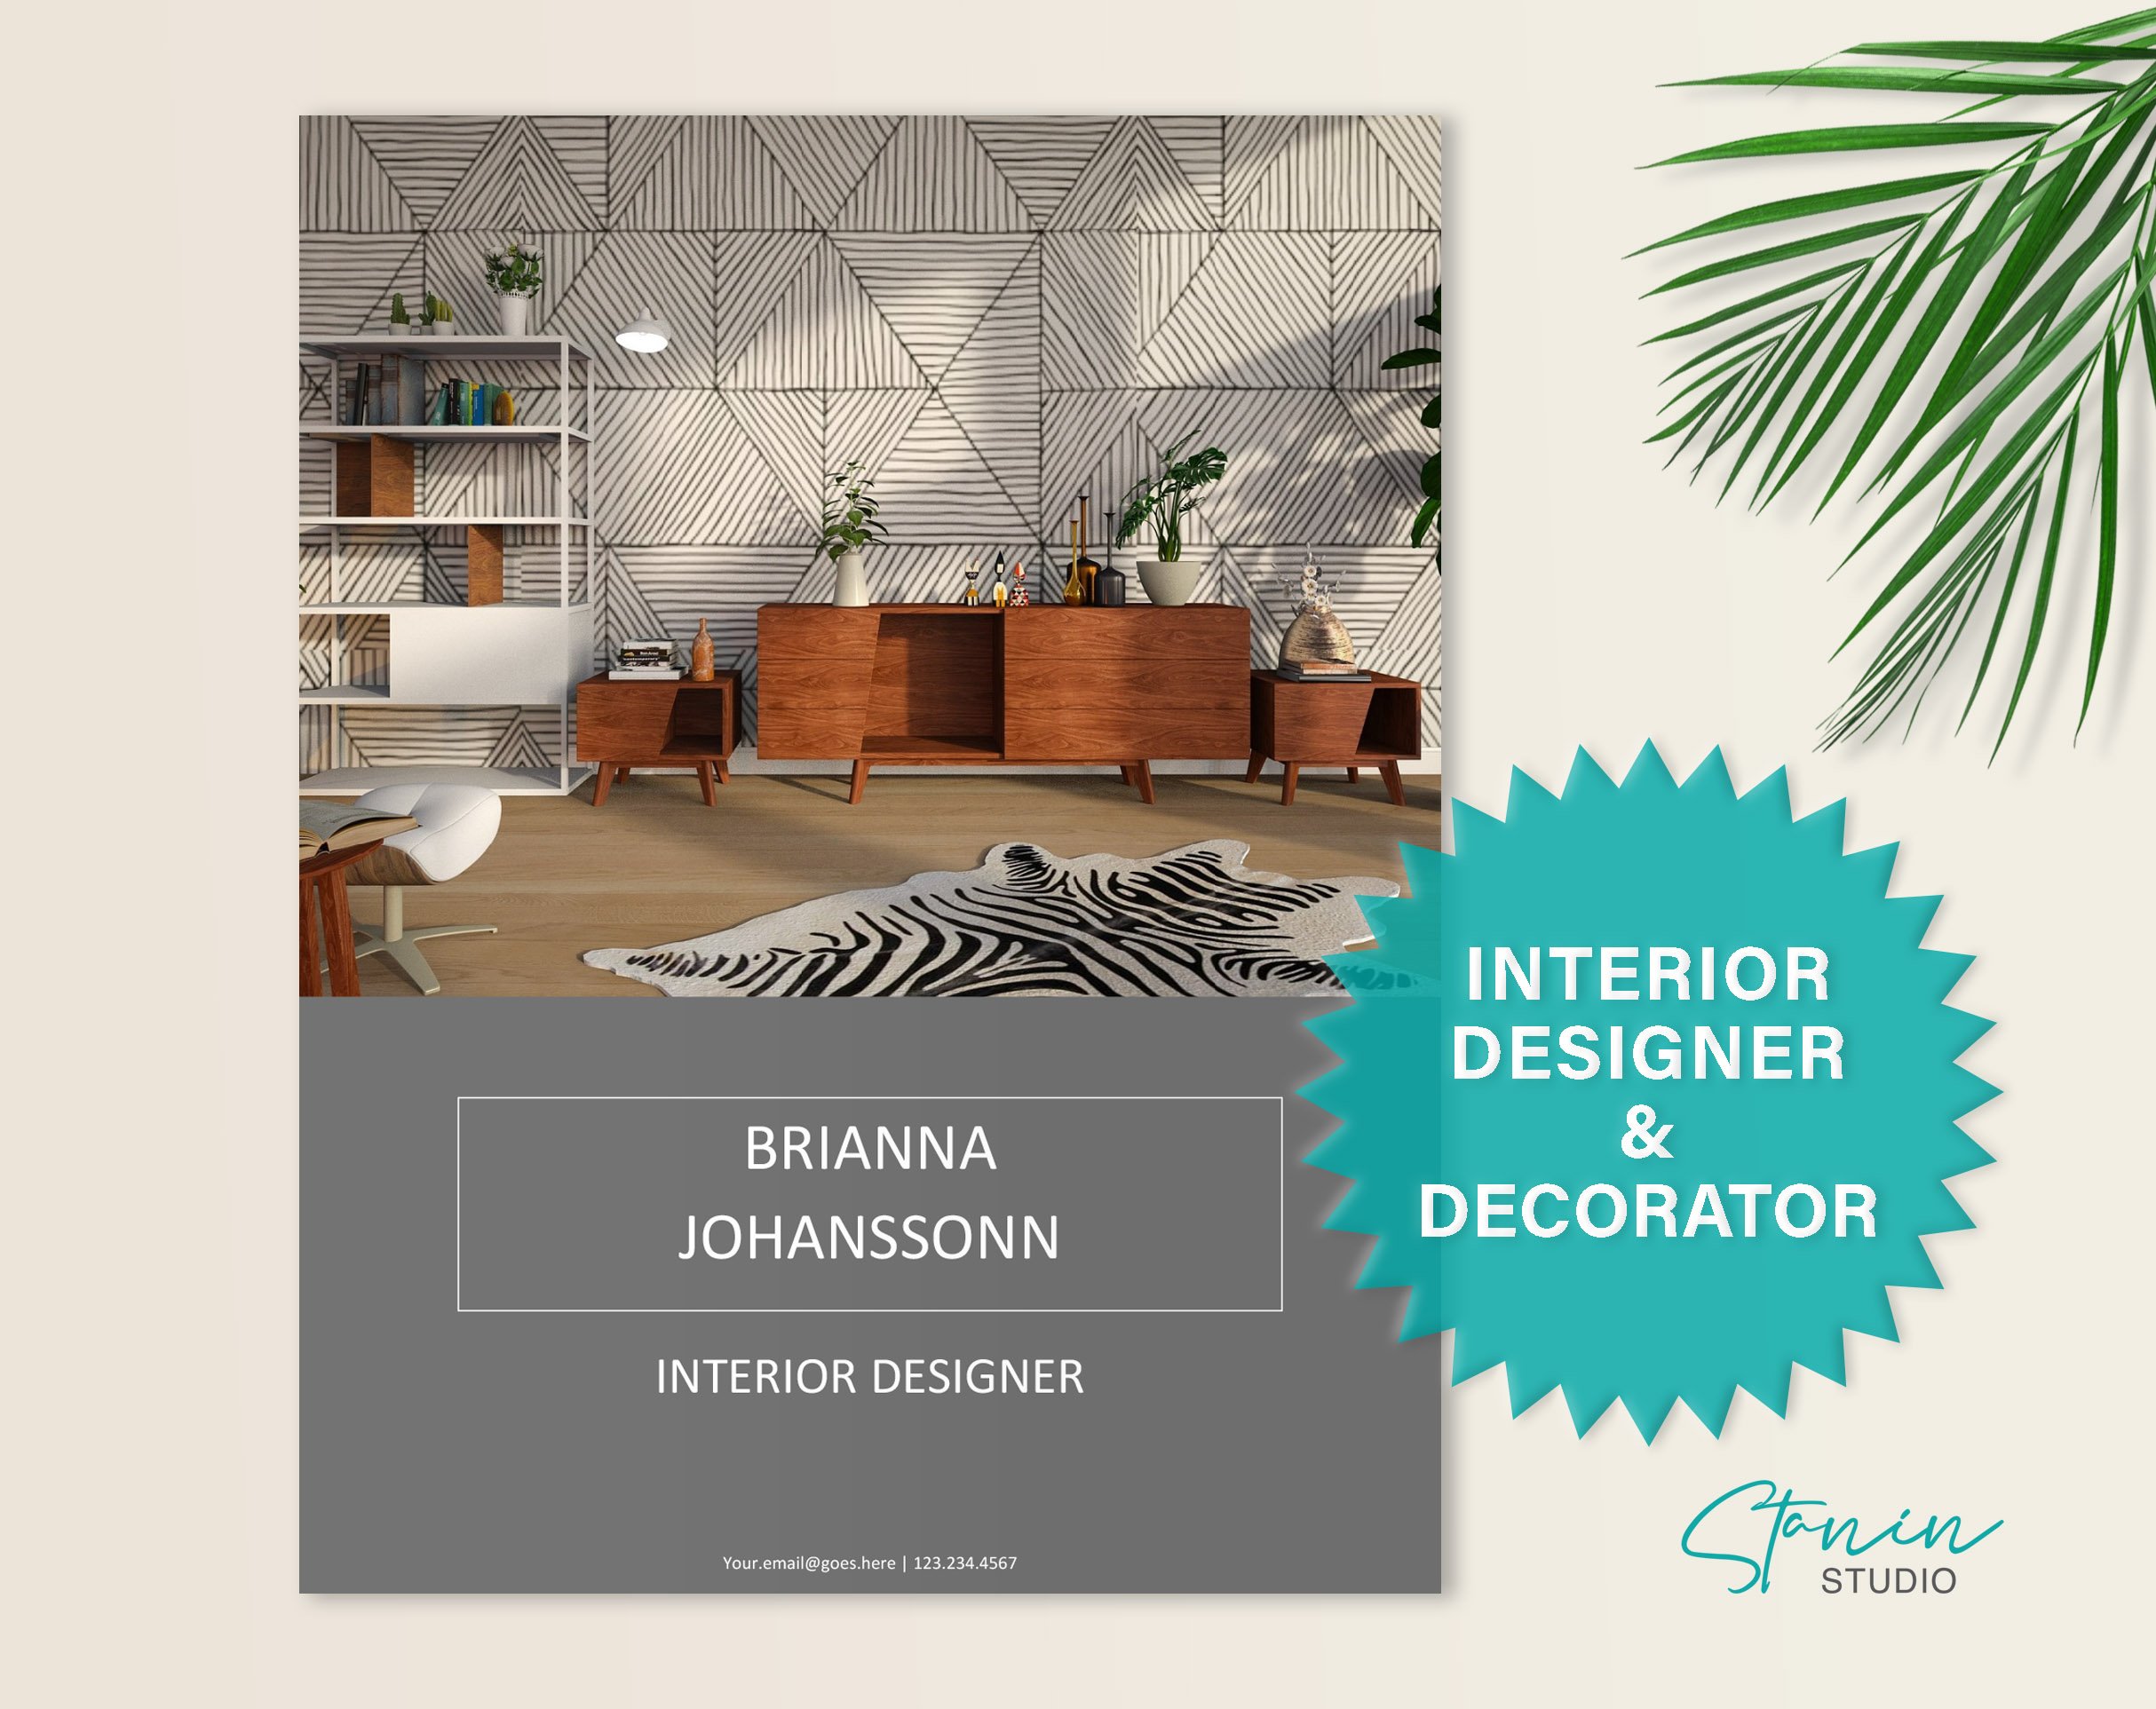 Interior Designer, Decorator Resume cover image.